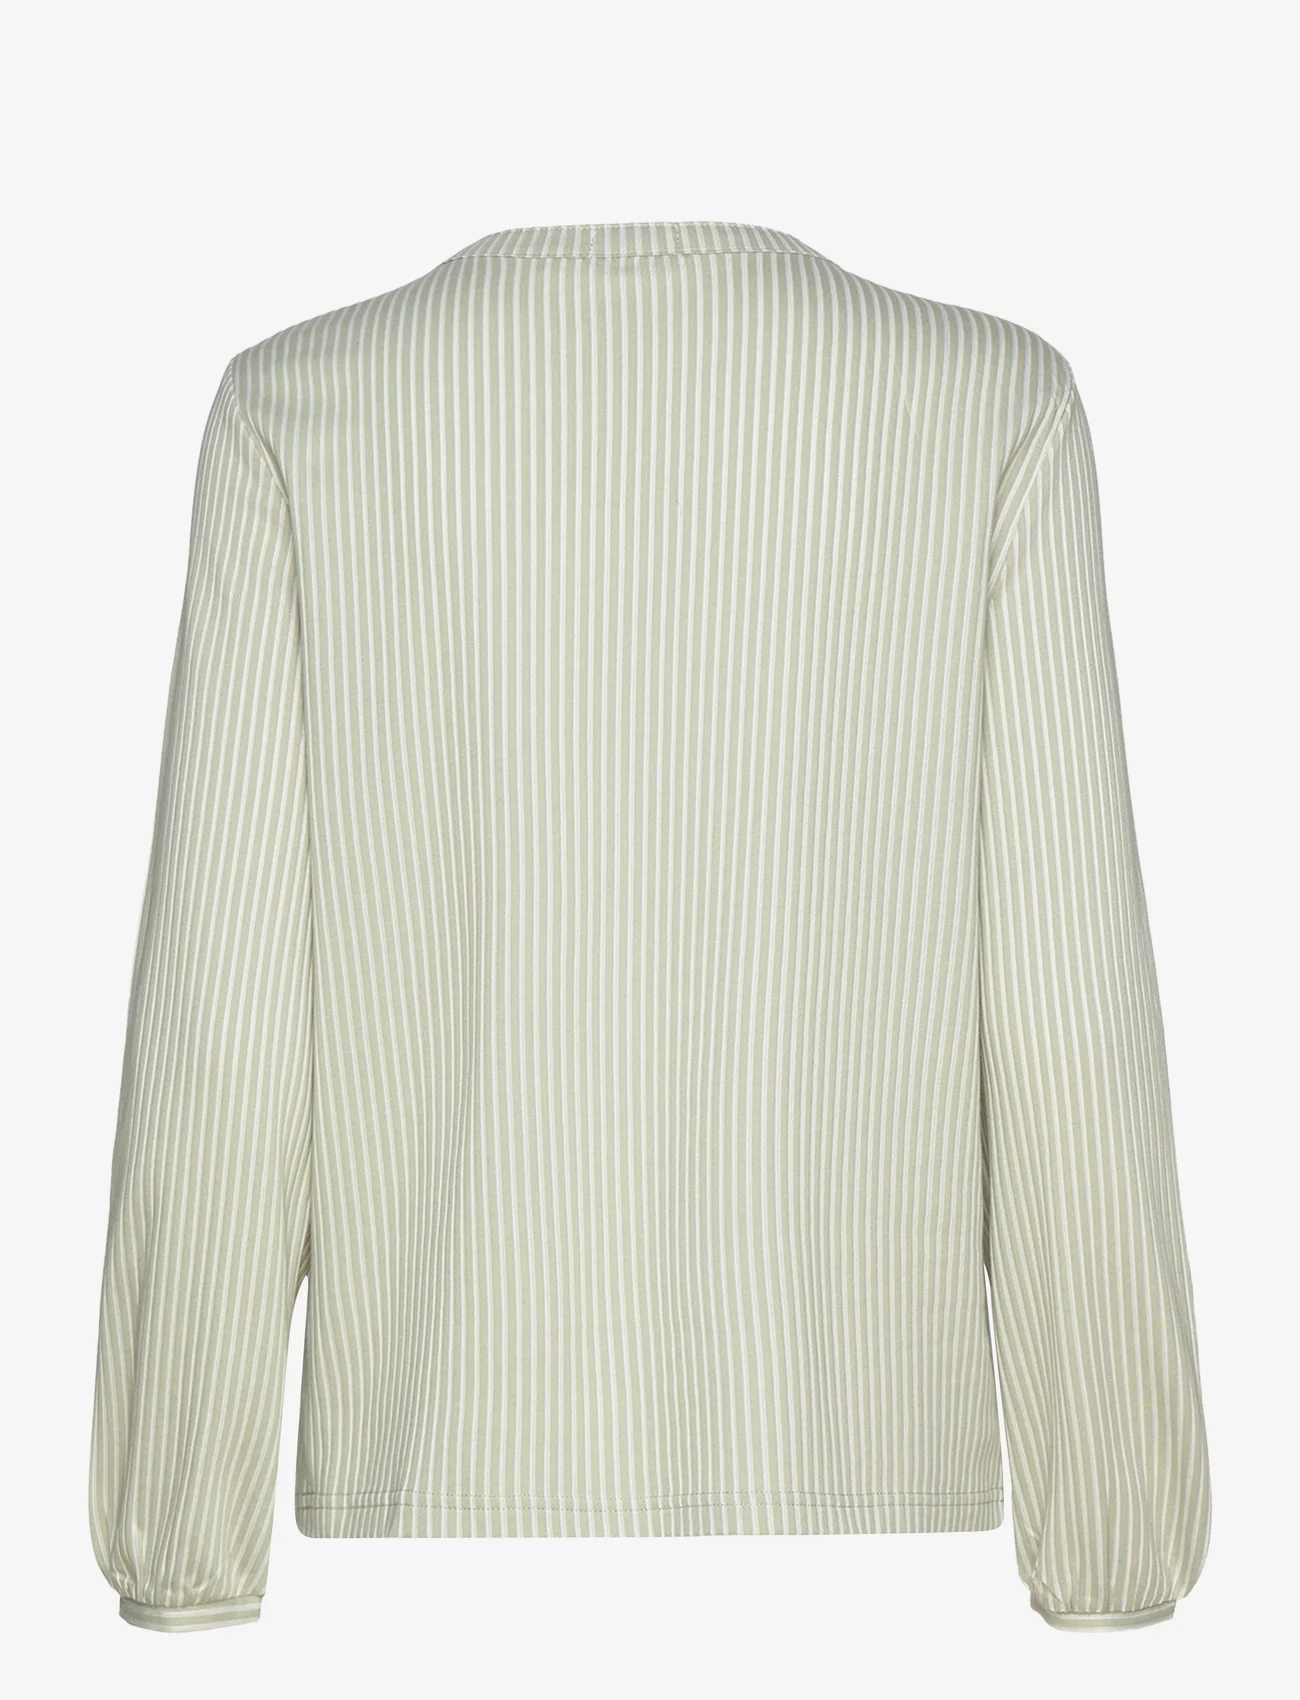 Tom Tailor - T-shirt blouse vertical stripe - långärmade blusar - desert green white thin stripe - 1